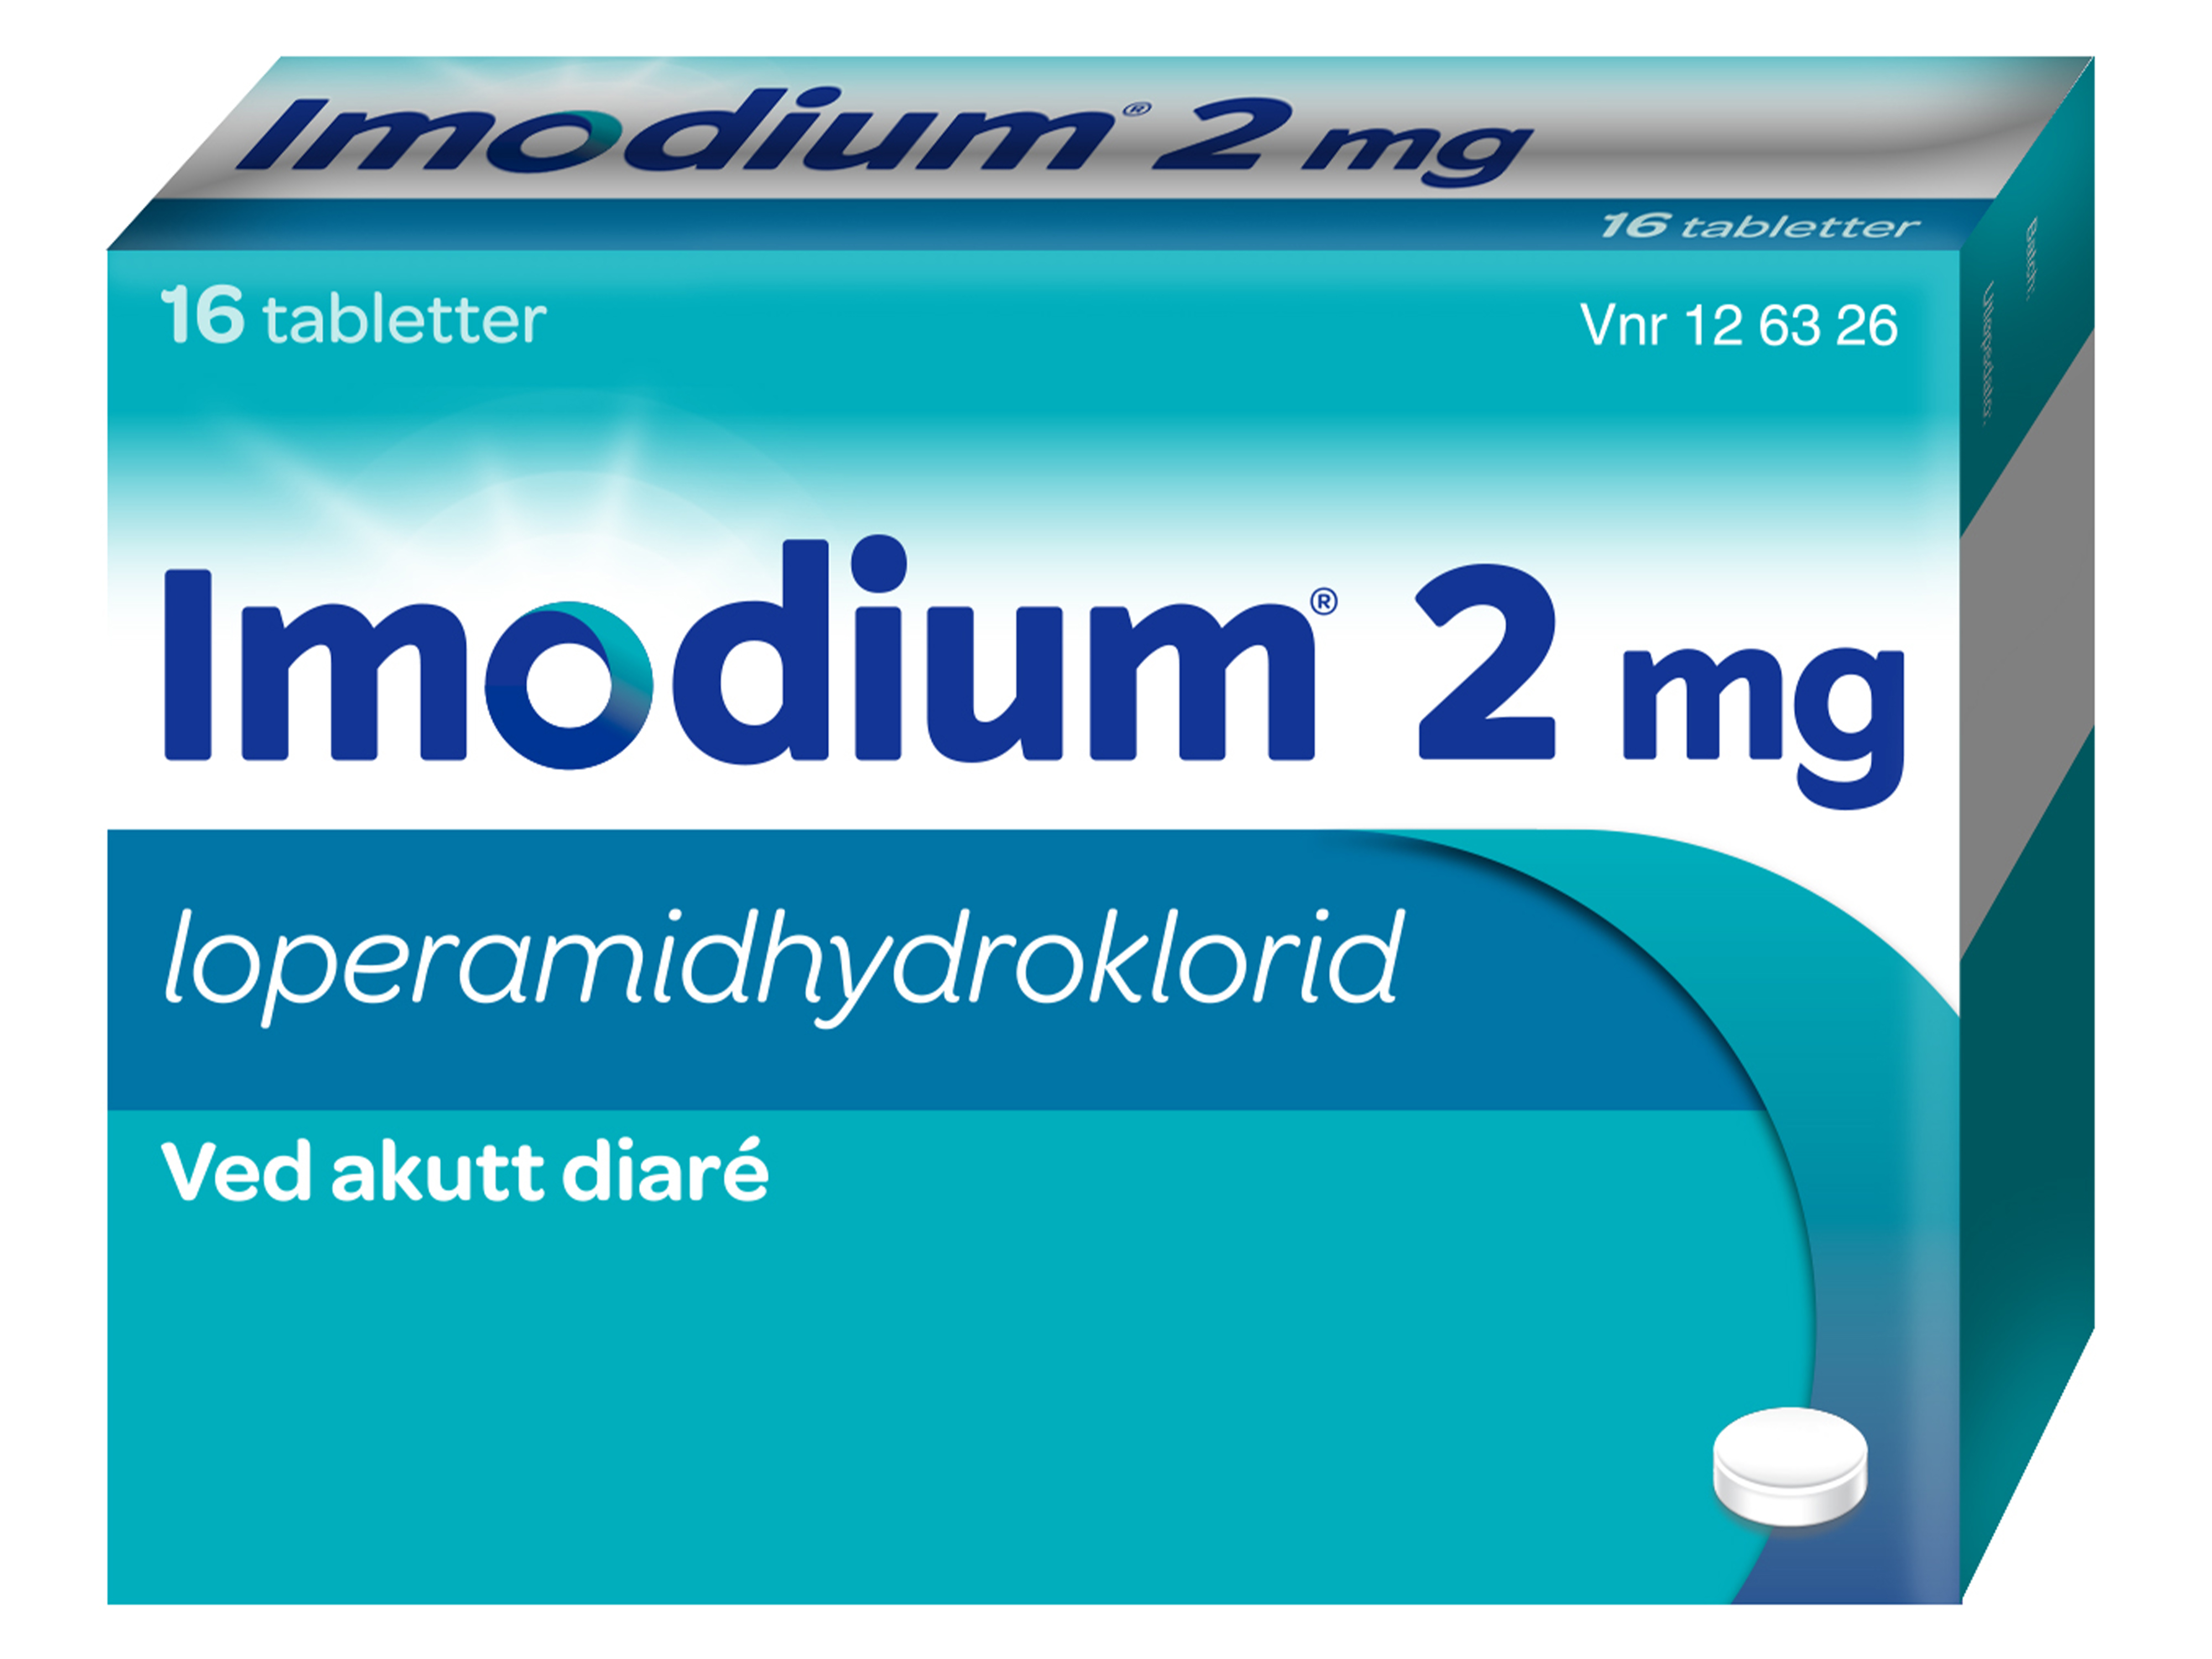 Imodium Tabletter 2mg, 16 stk. på brett